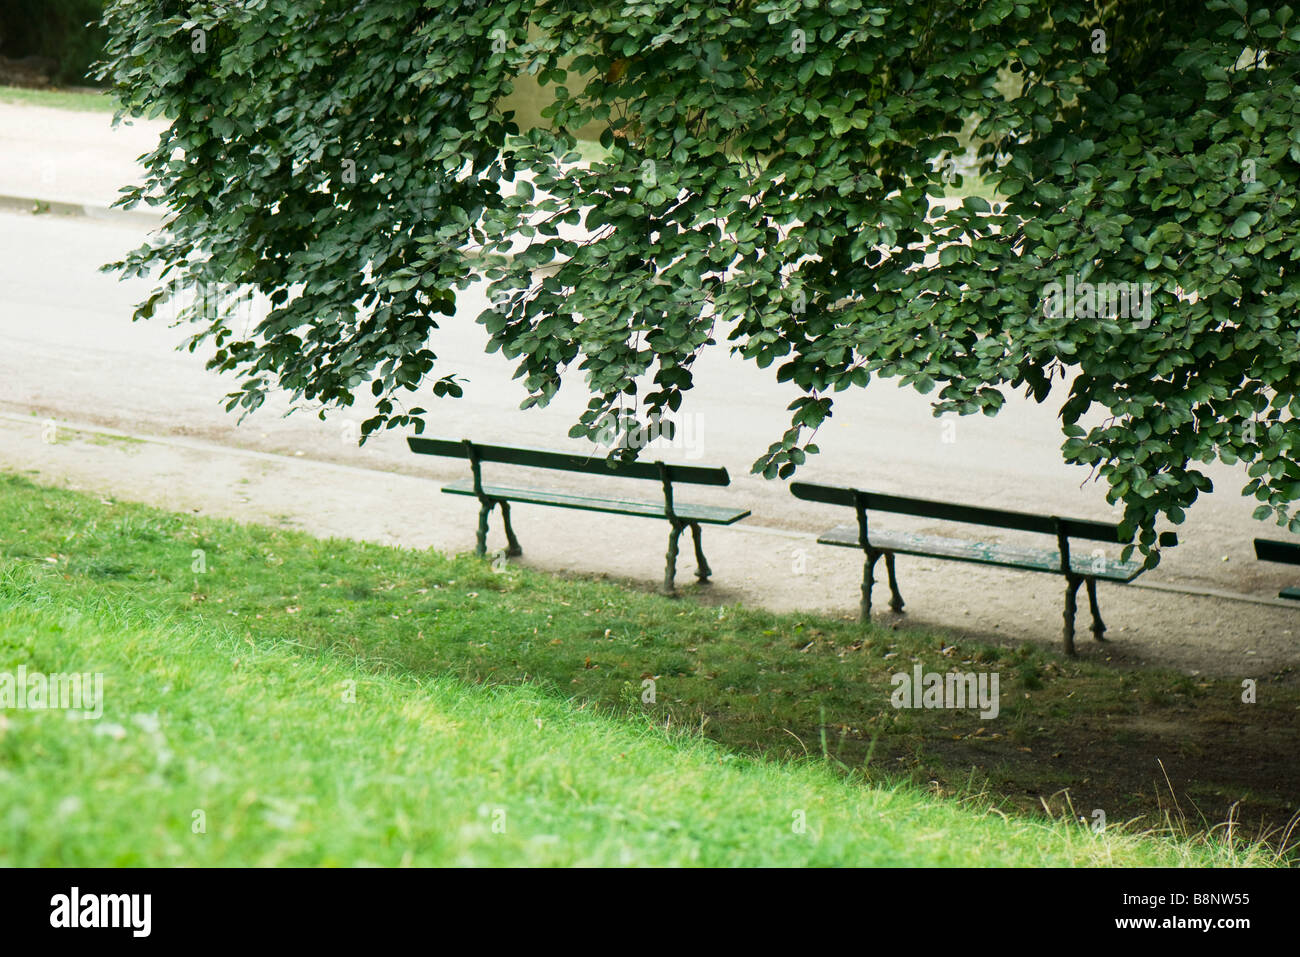 France, Paris, des bancs de parc en vertu de l'ombre d'un arbre Banque D'Images